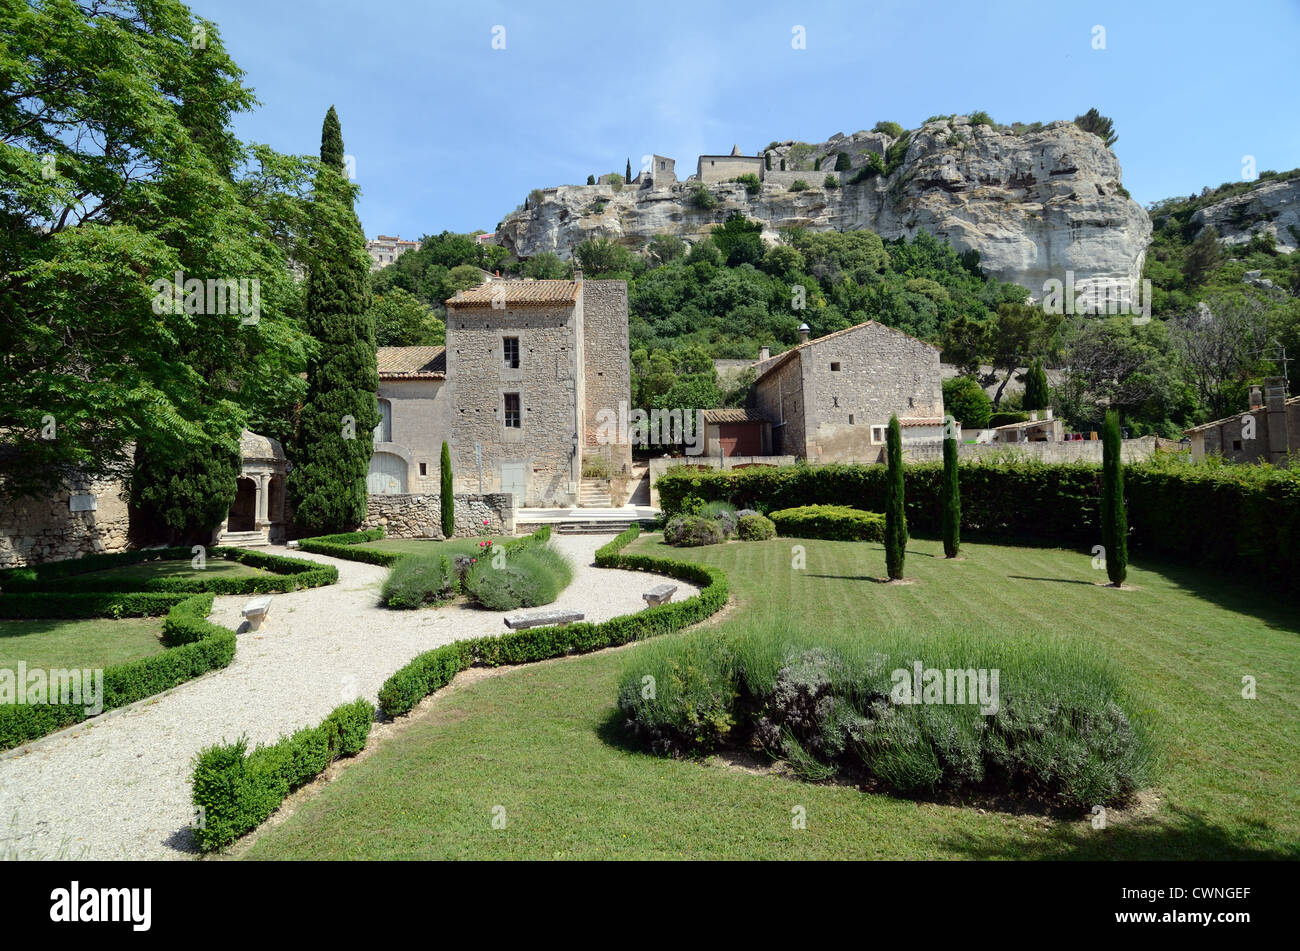 View of Les Baux or Les Baux-de-Provence and Public Gardens in the Alpilles  Provence France Stock Photo